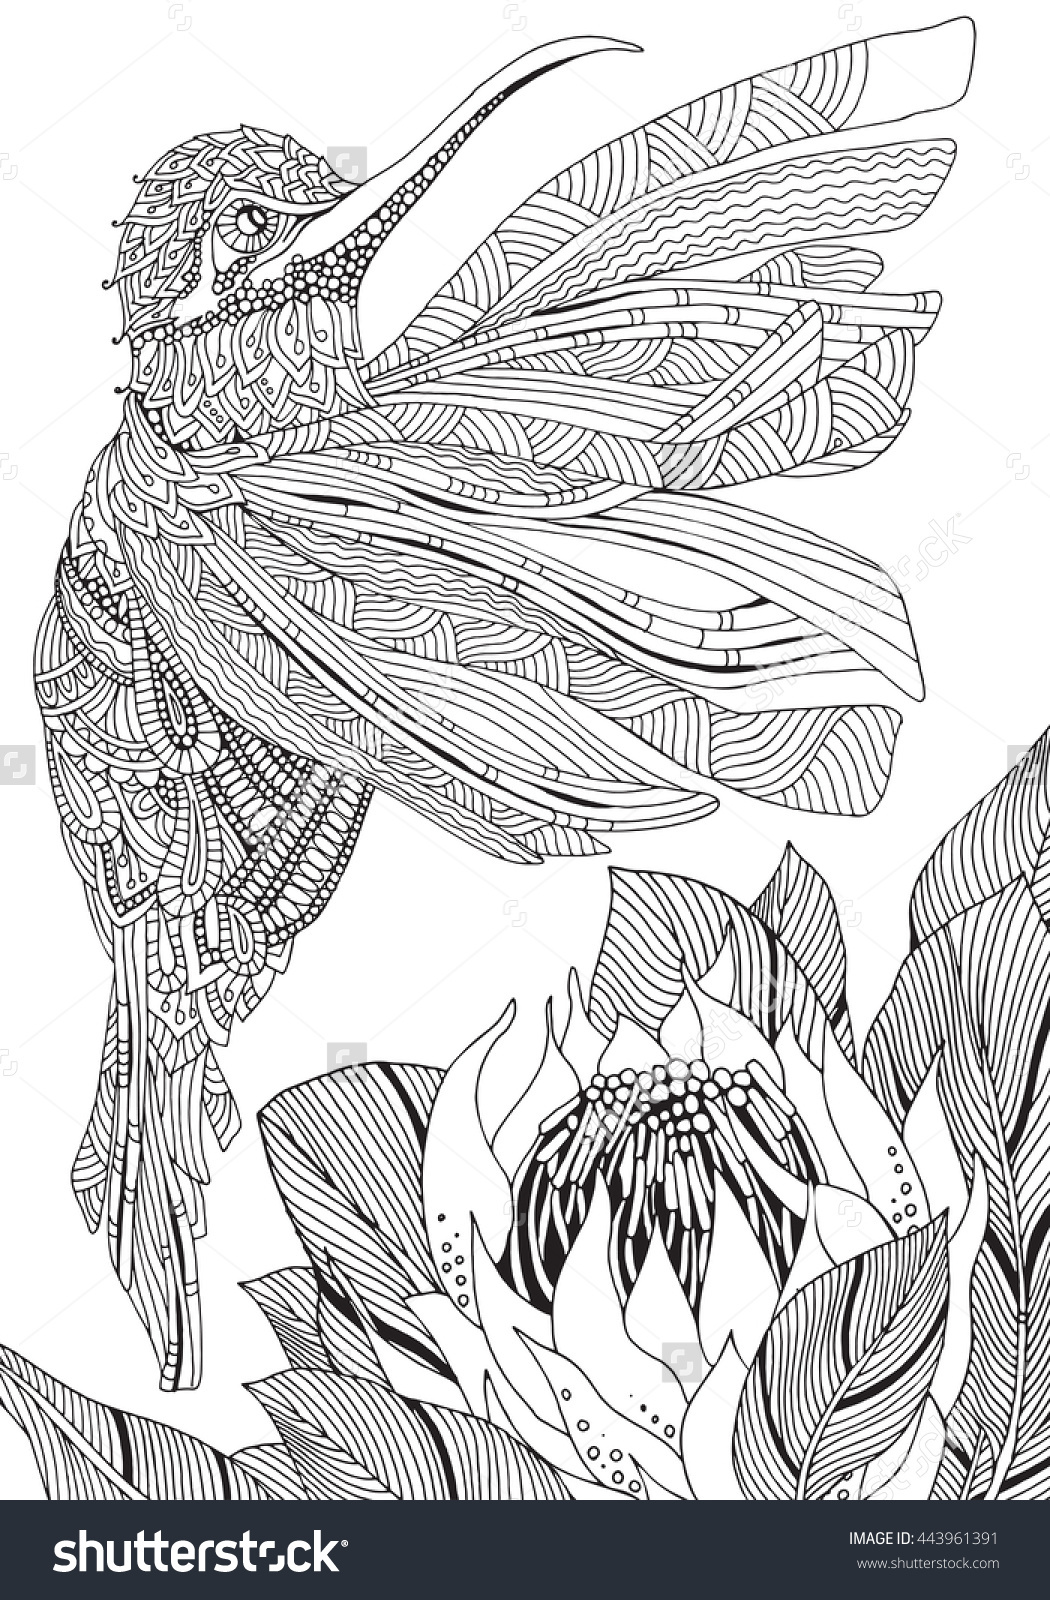 Sunbird coloring #7, Download drawings